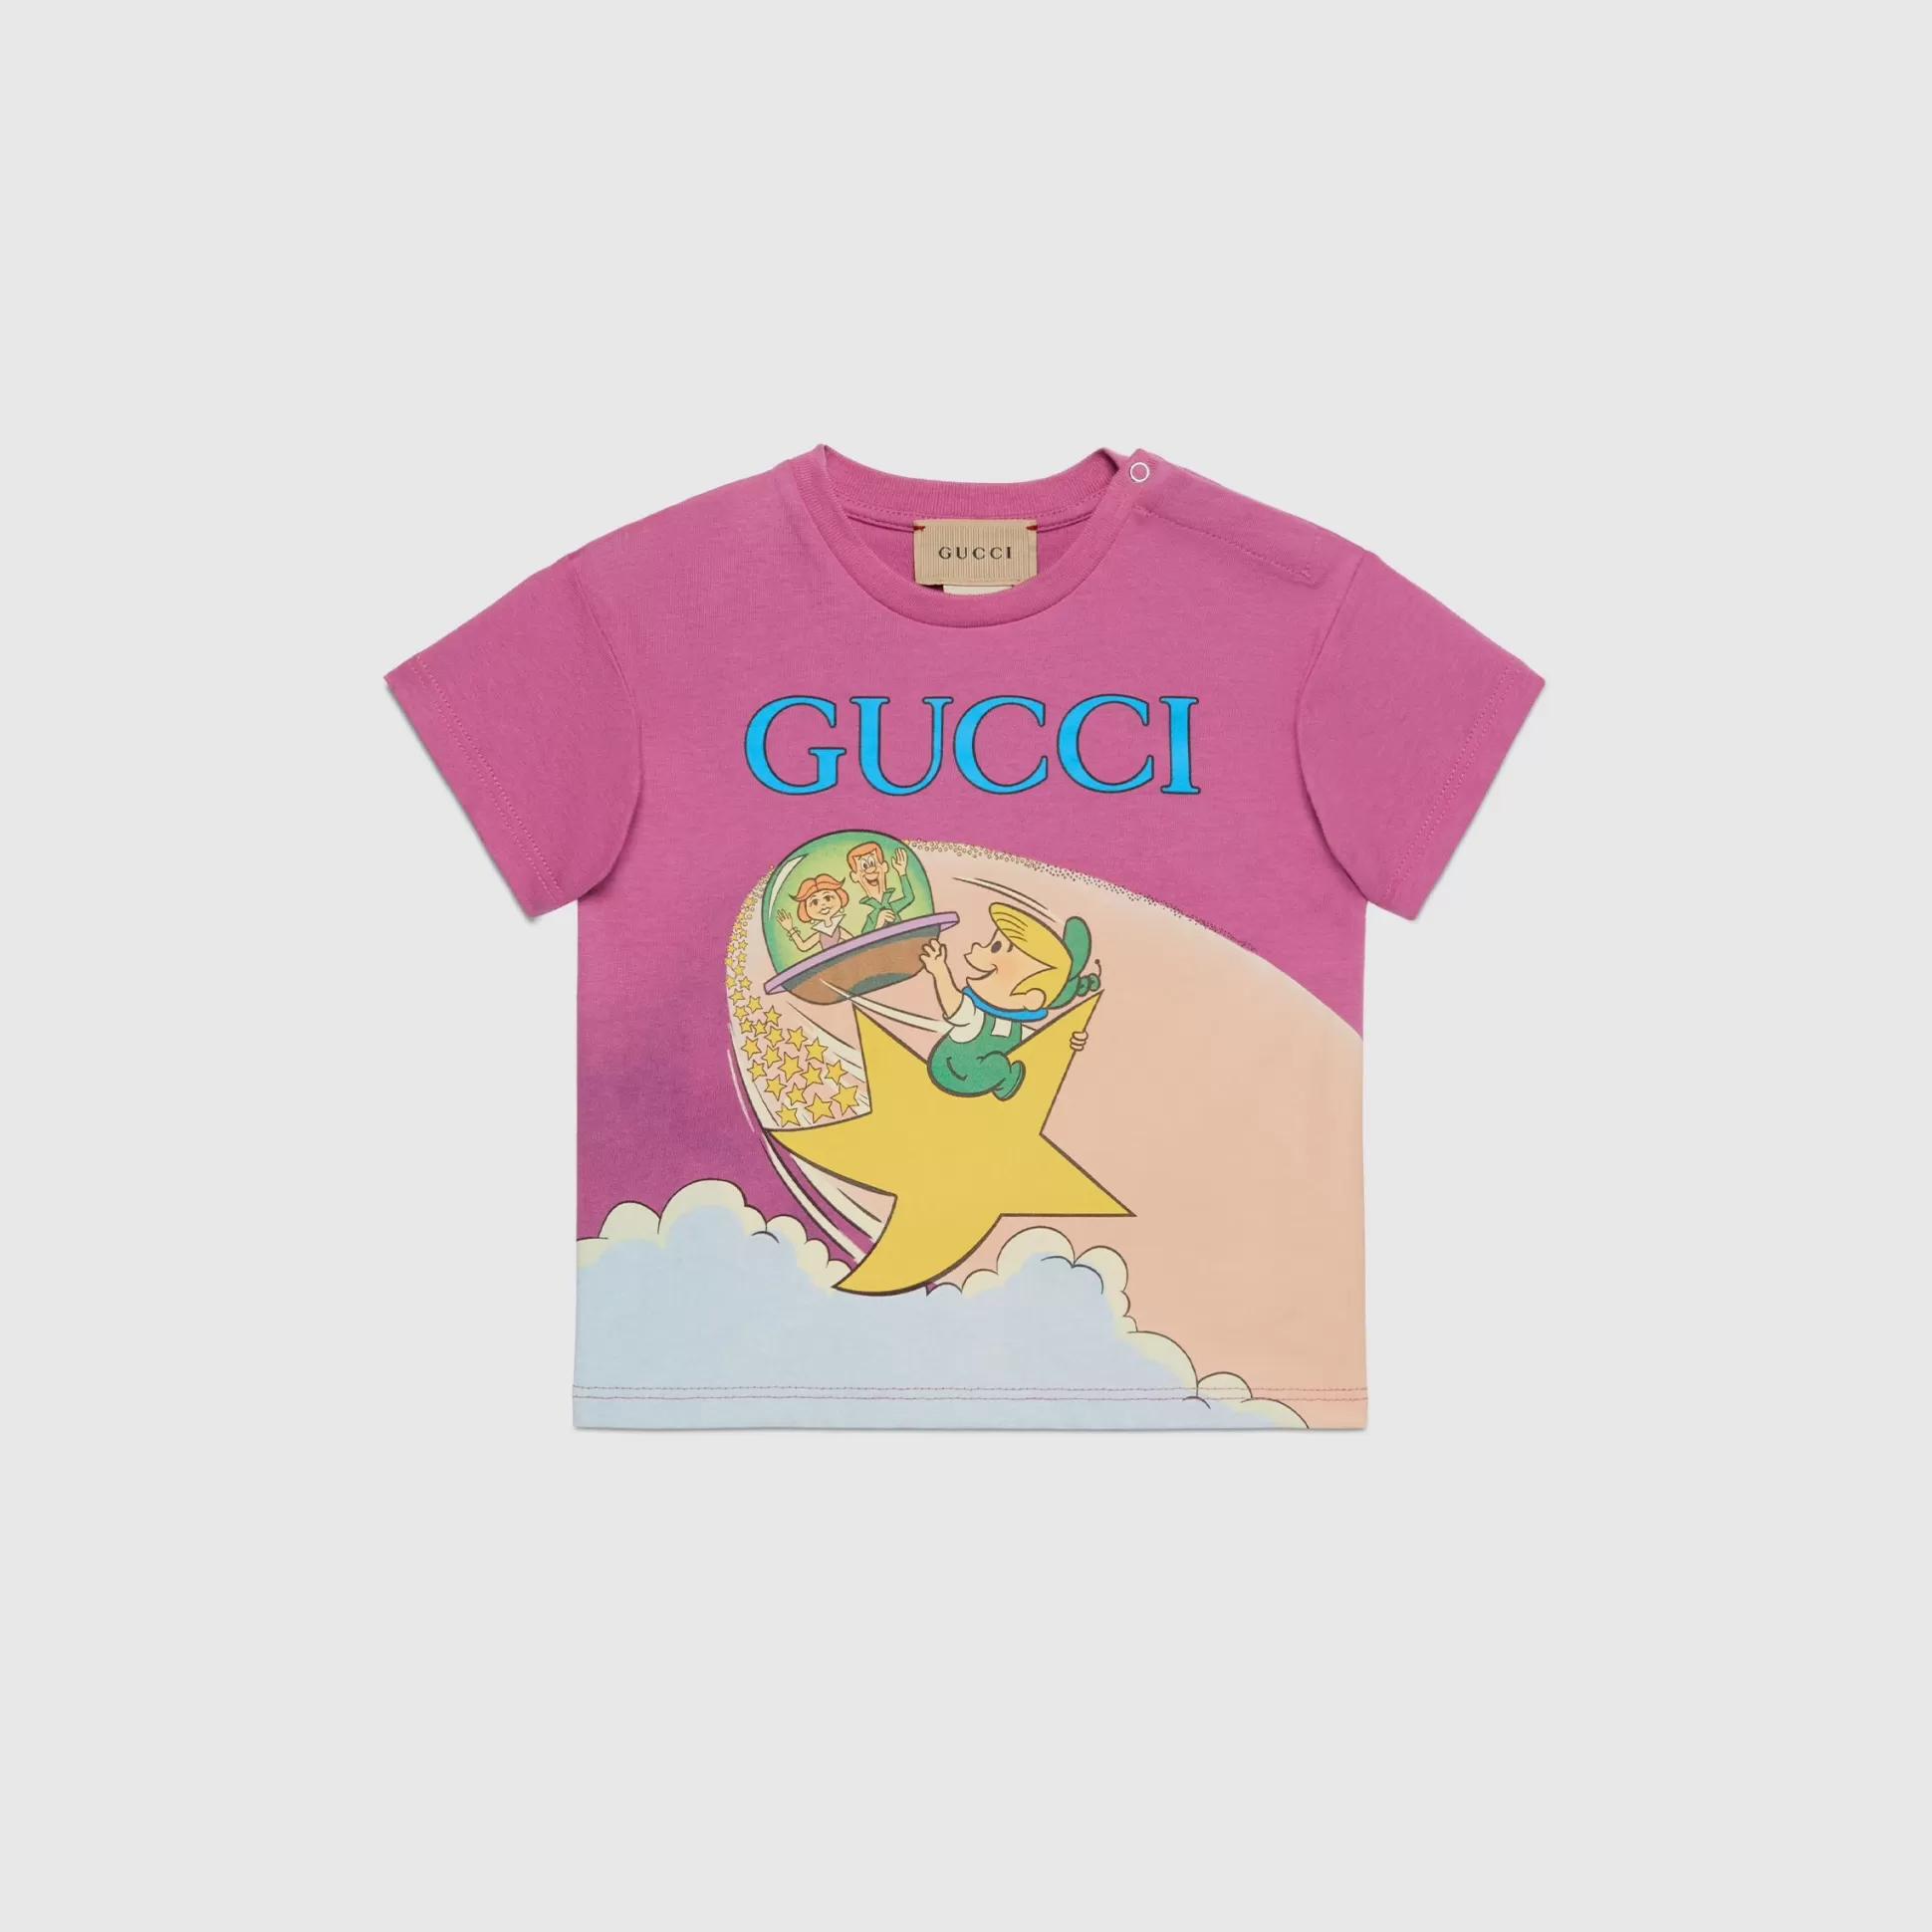 GUCCI Baby Printed Cotton T-Shirt-Children Girls (0-36 Months)